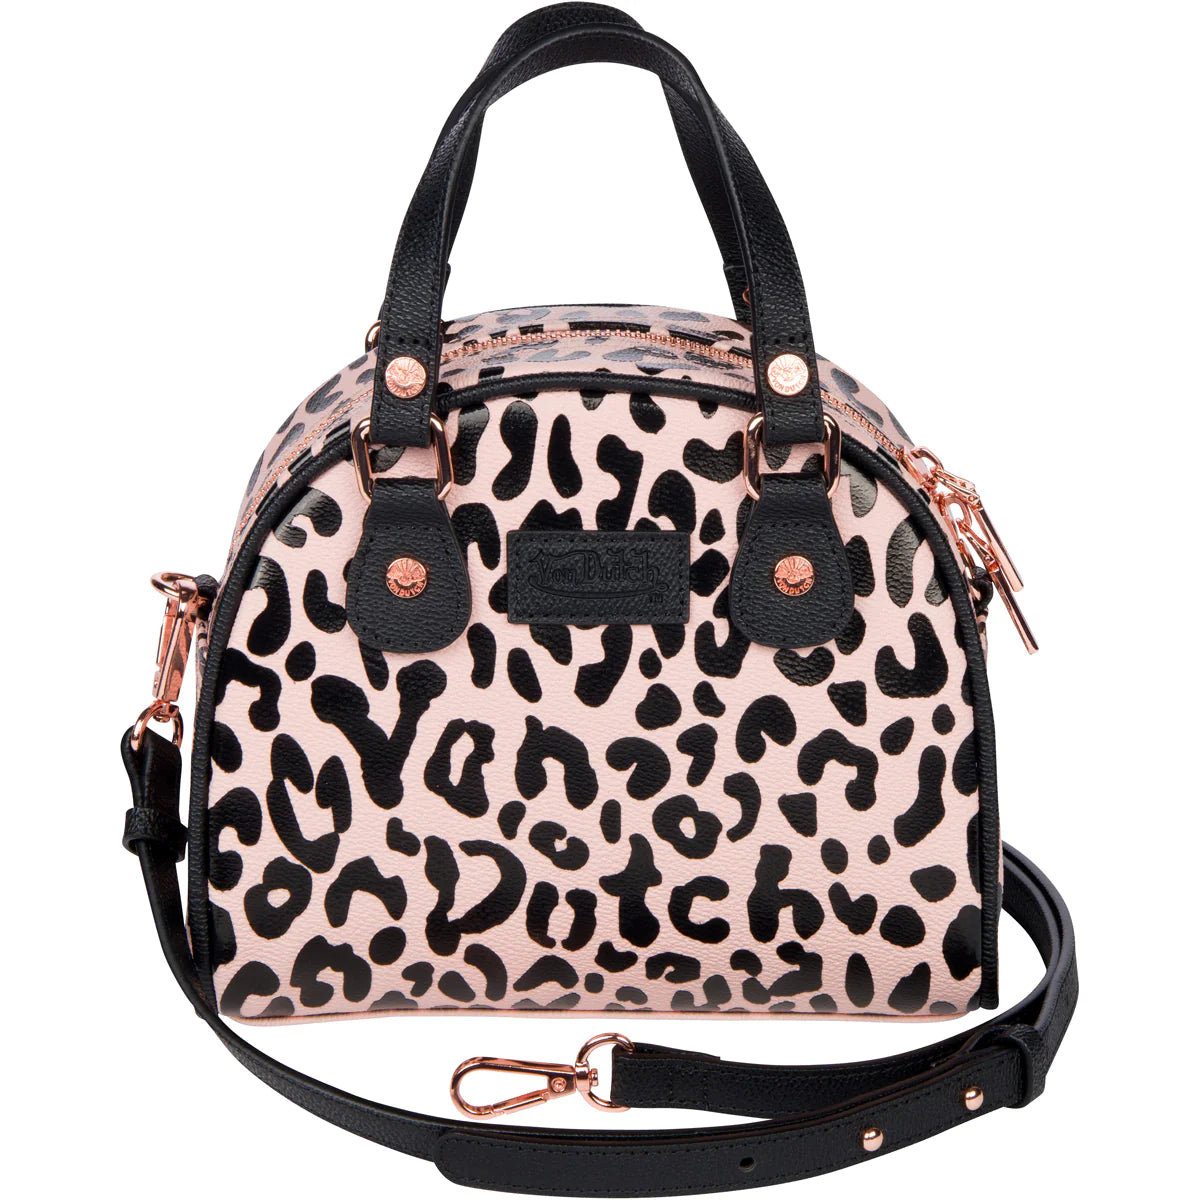 Von Dutch Cheetah Pink Bowling Bag